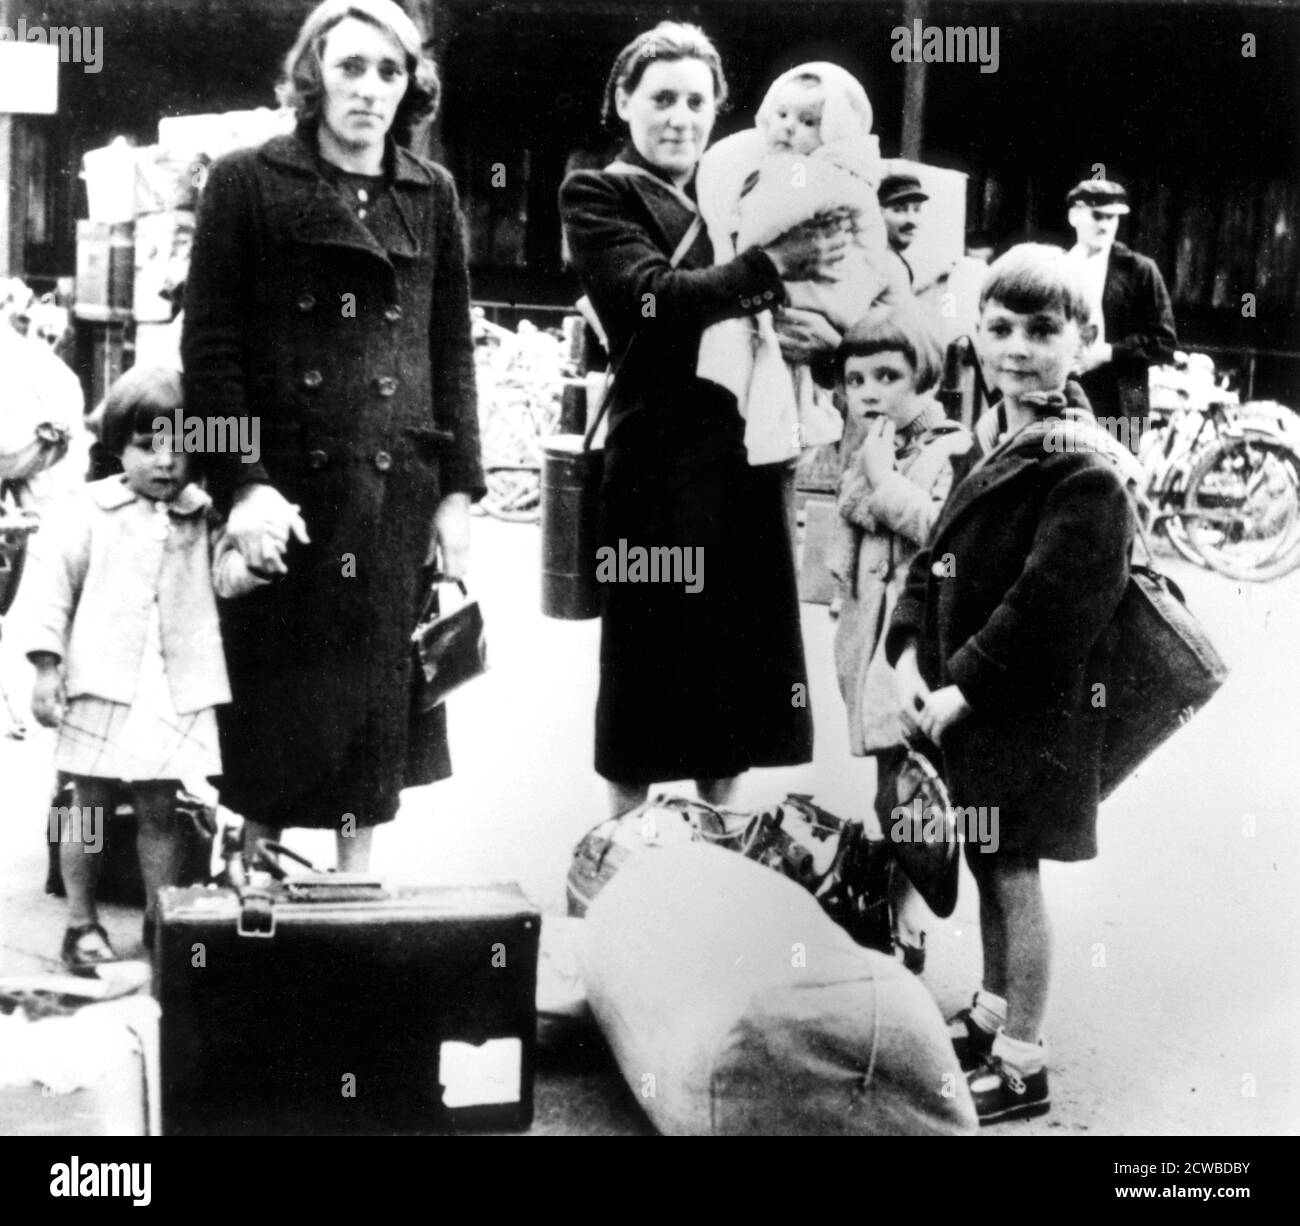 Réfugiés avec leurs biens, Paris occupé par l'Allemagne, juillet 1940. Le photographe est inconnu. Banque D'Images